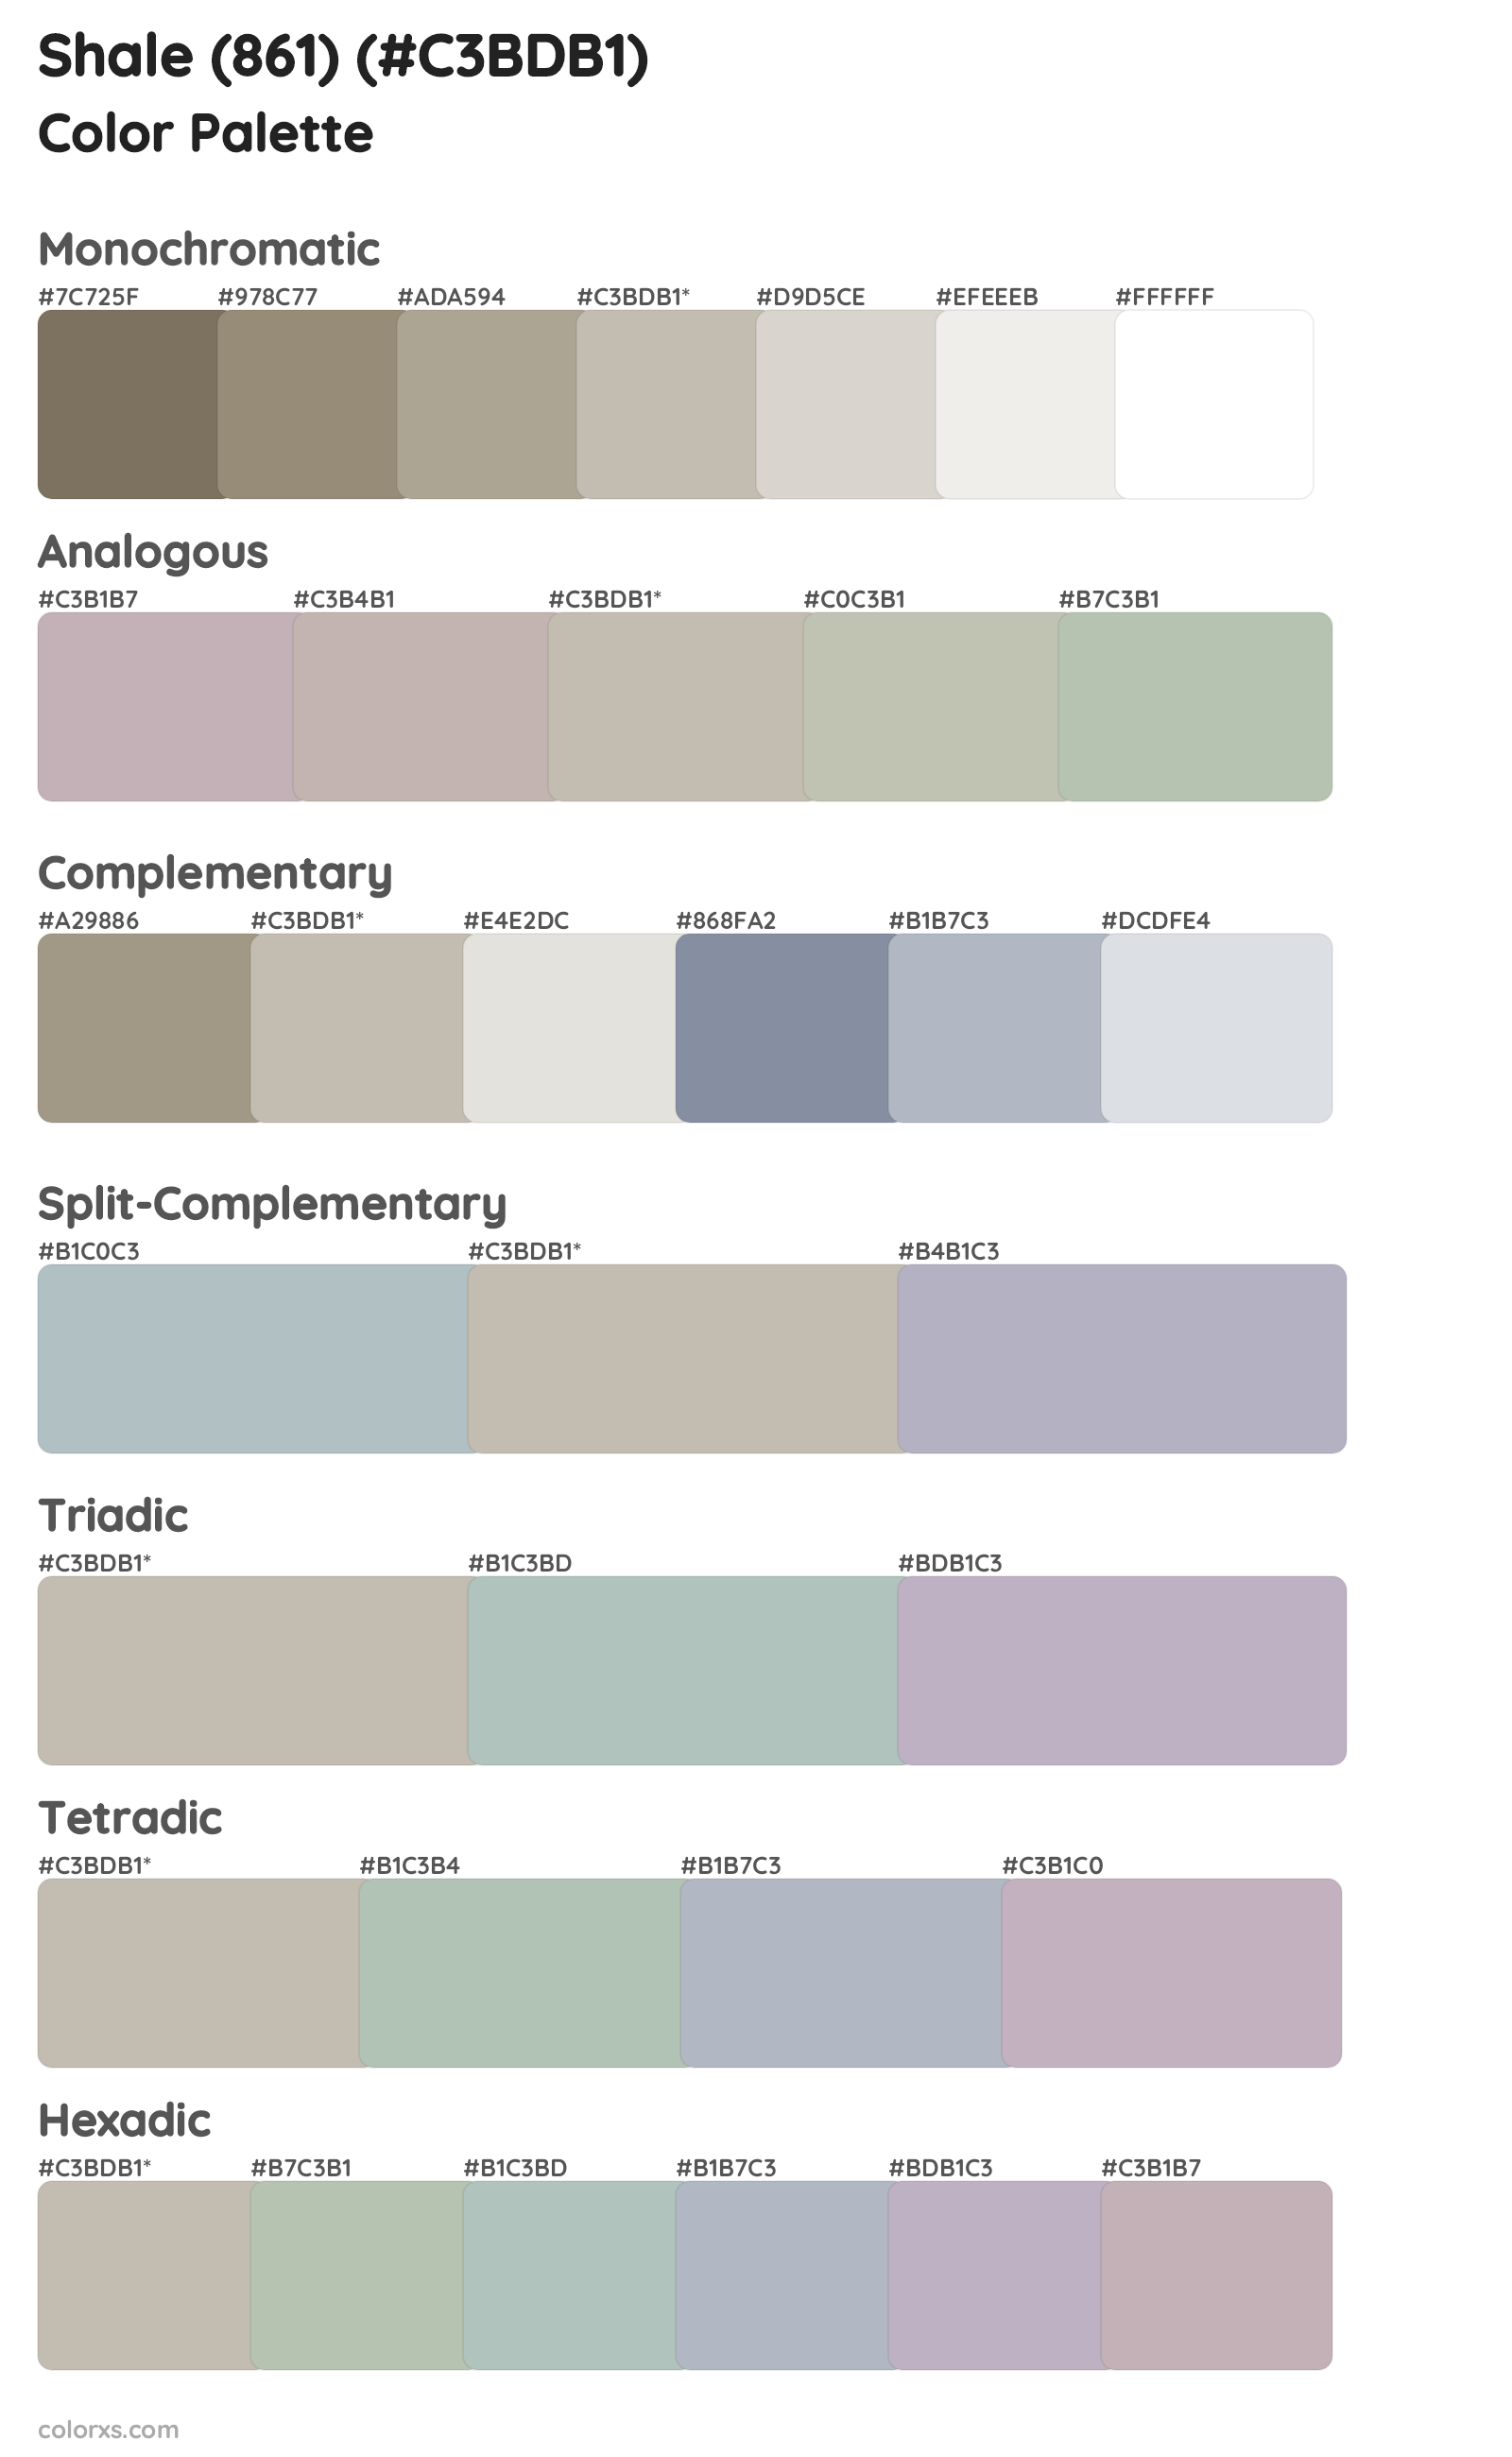 Shale (861) Color Scheme Palettes